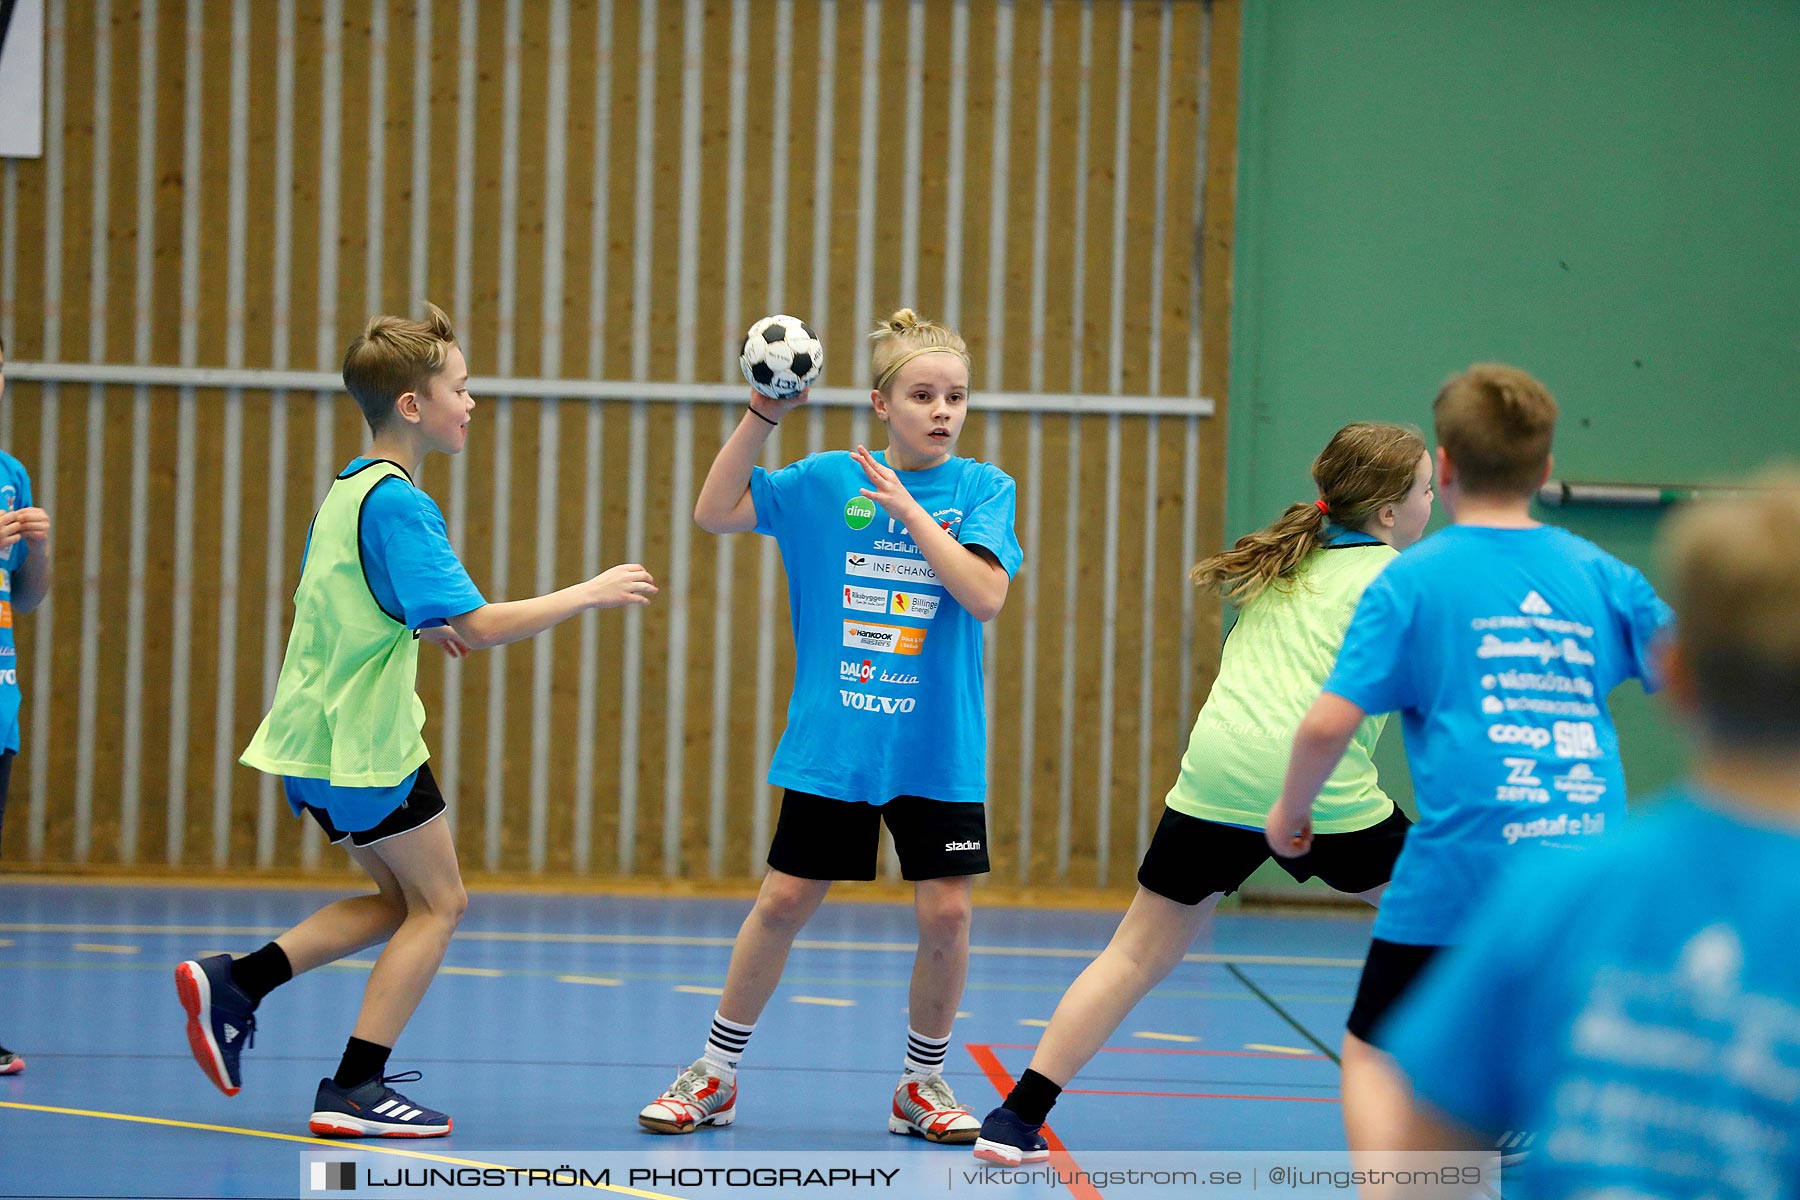 Klasshandboll Skövde 2019 Åldersklass 2008,mix,Arena Skövde,Skövde,Sverige,Handboll,,2019,211707